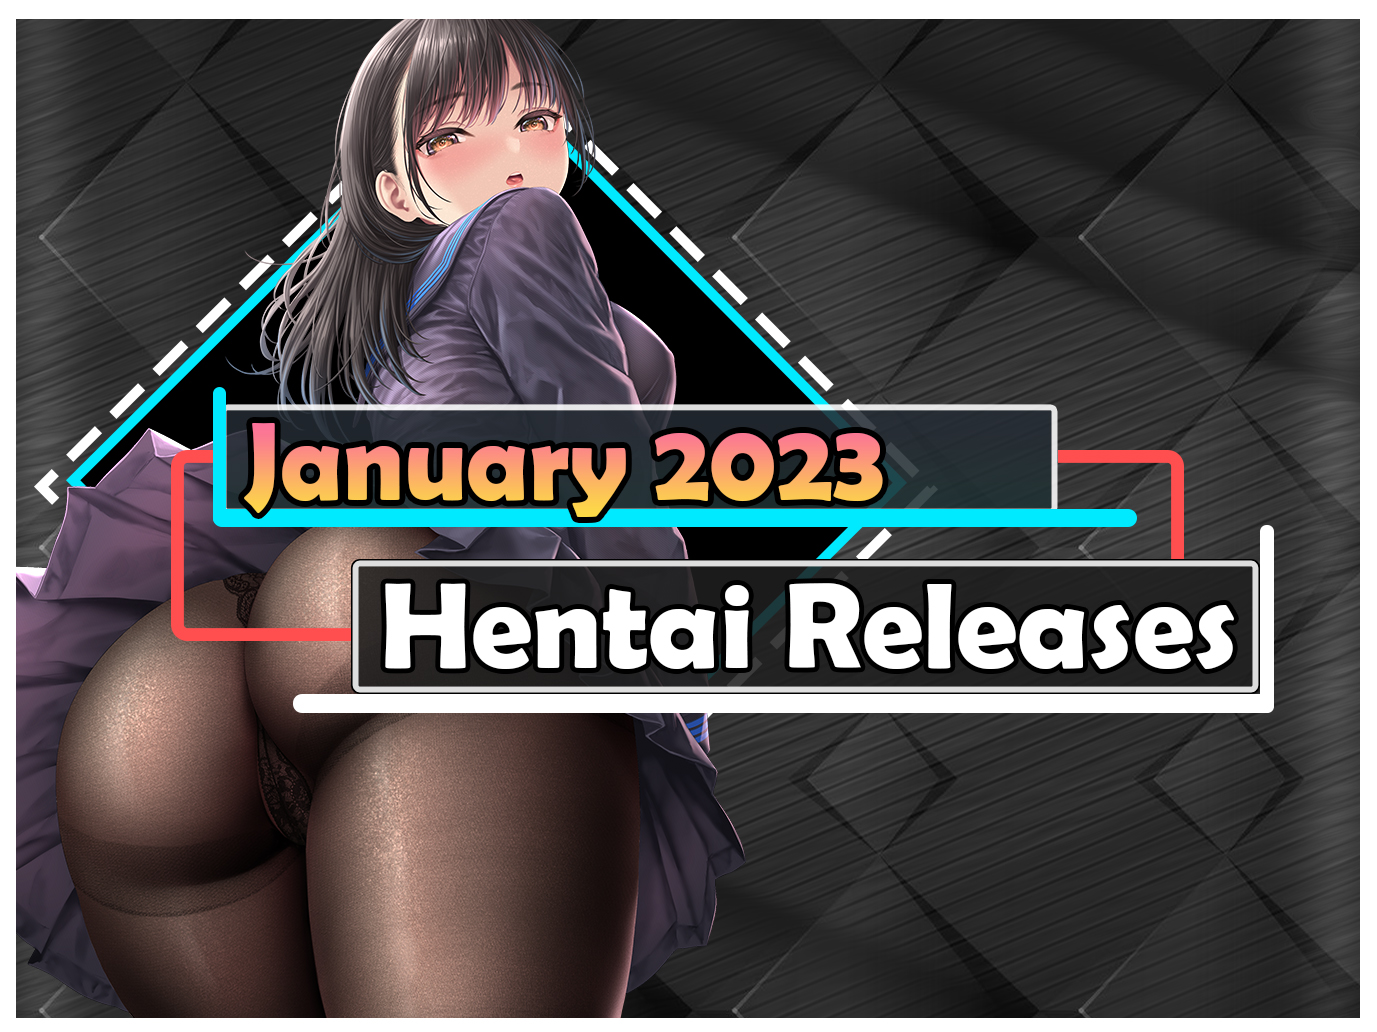 Hentai release january 2023